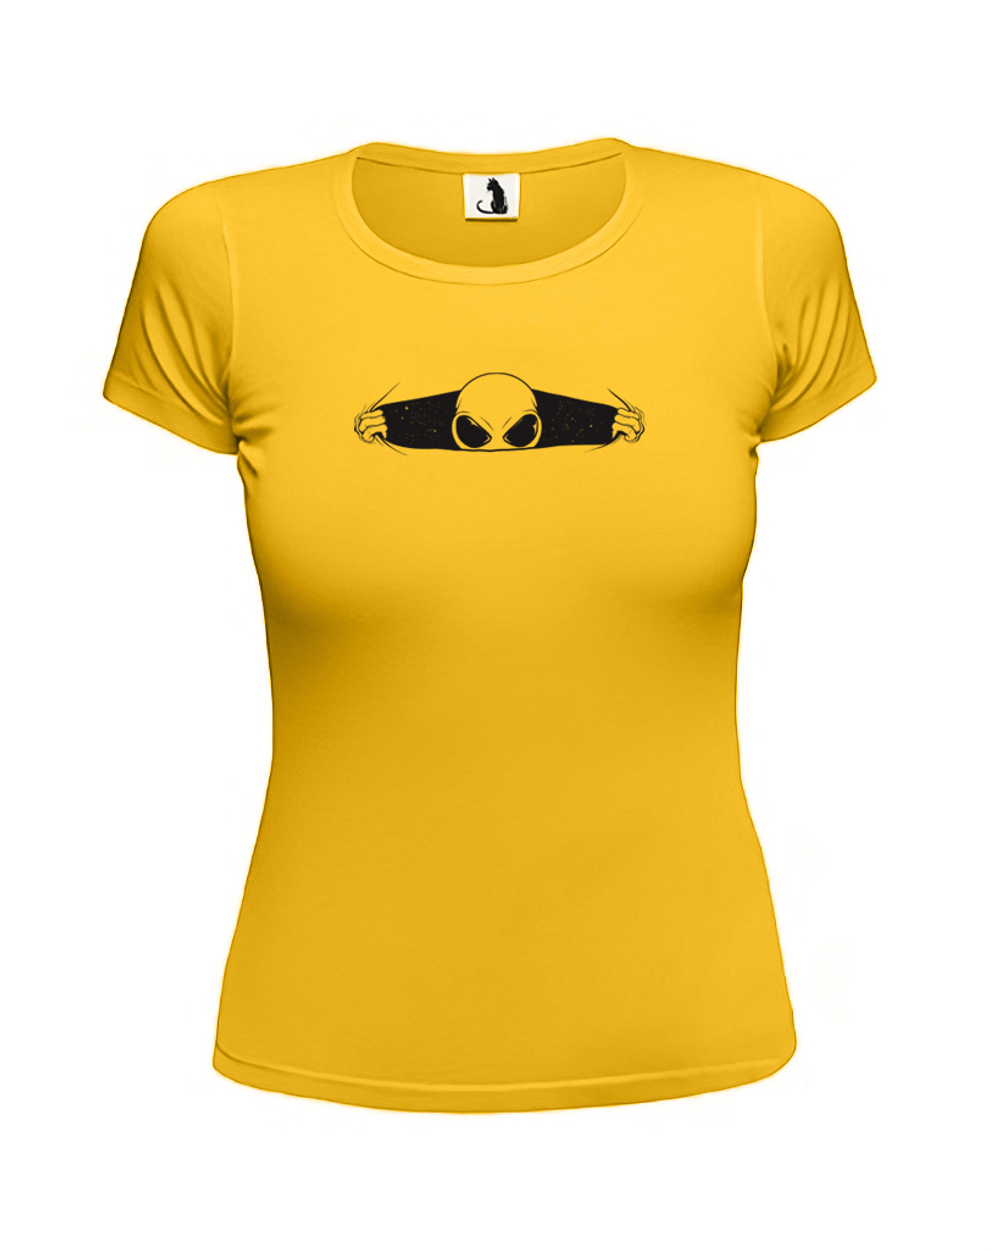 Футболка с инопланетянином женская приталенная желтая с черным рисунком